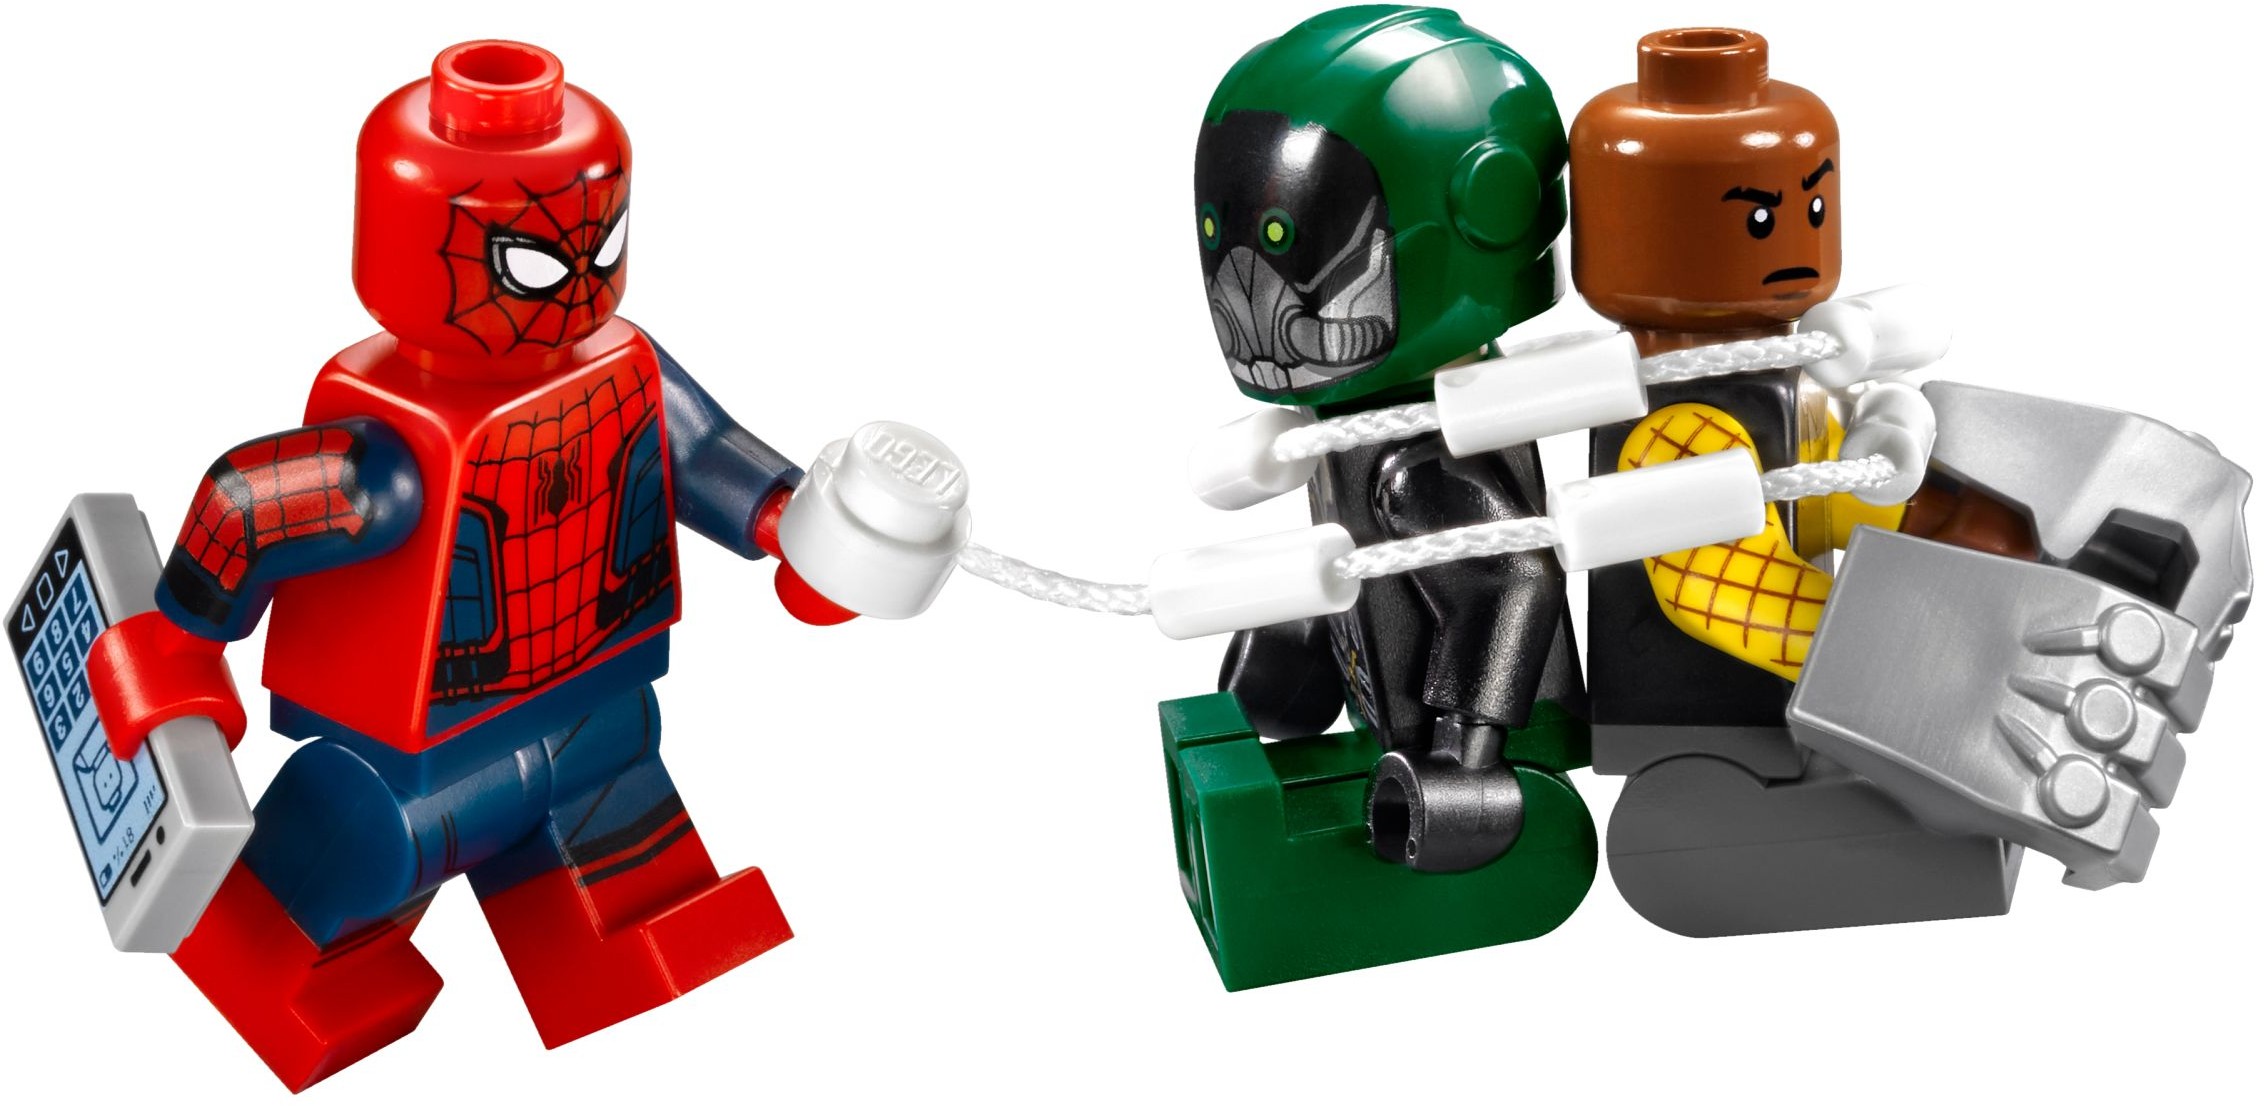 레고 마블 슈퍼히어로즈 76083 벌처와의 결투 (LEGO Marvel Super Heroes 76083 Beware the Vulture) - 블로그